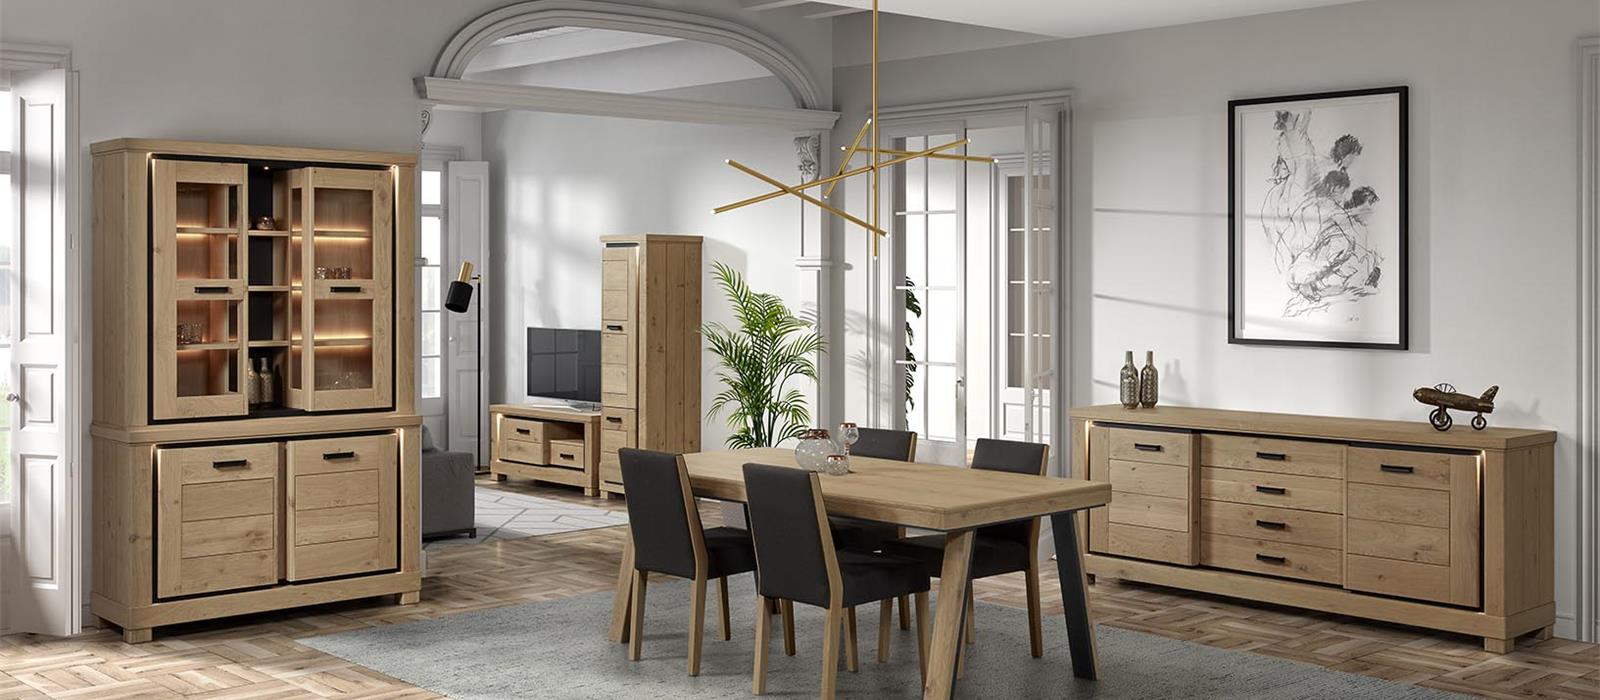 Respect Verwachting In Collecties | THEUNS - Belgian Oak Furniture